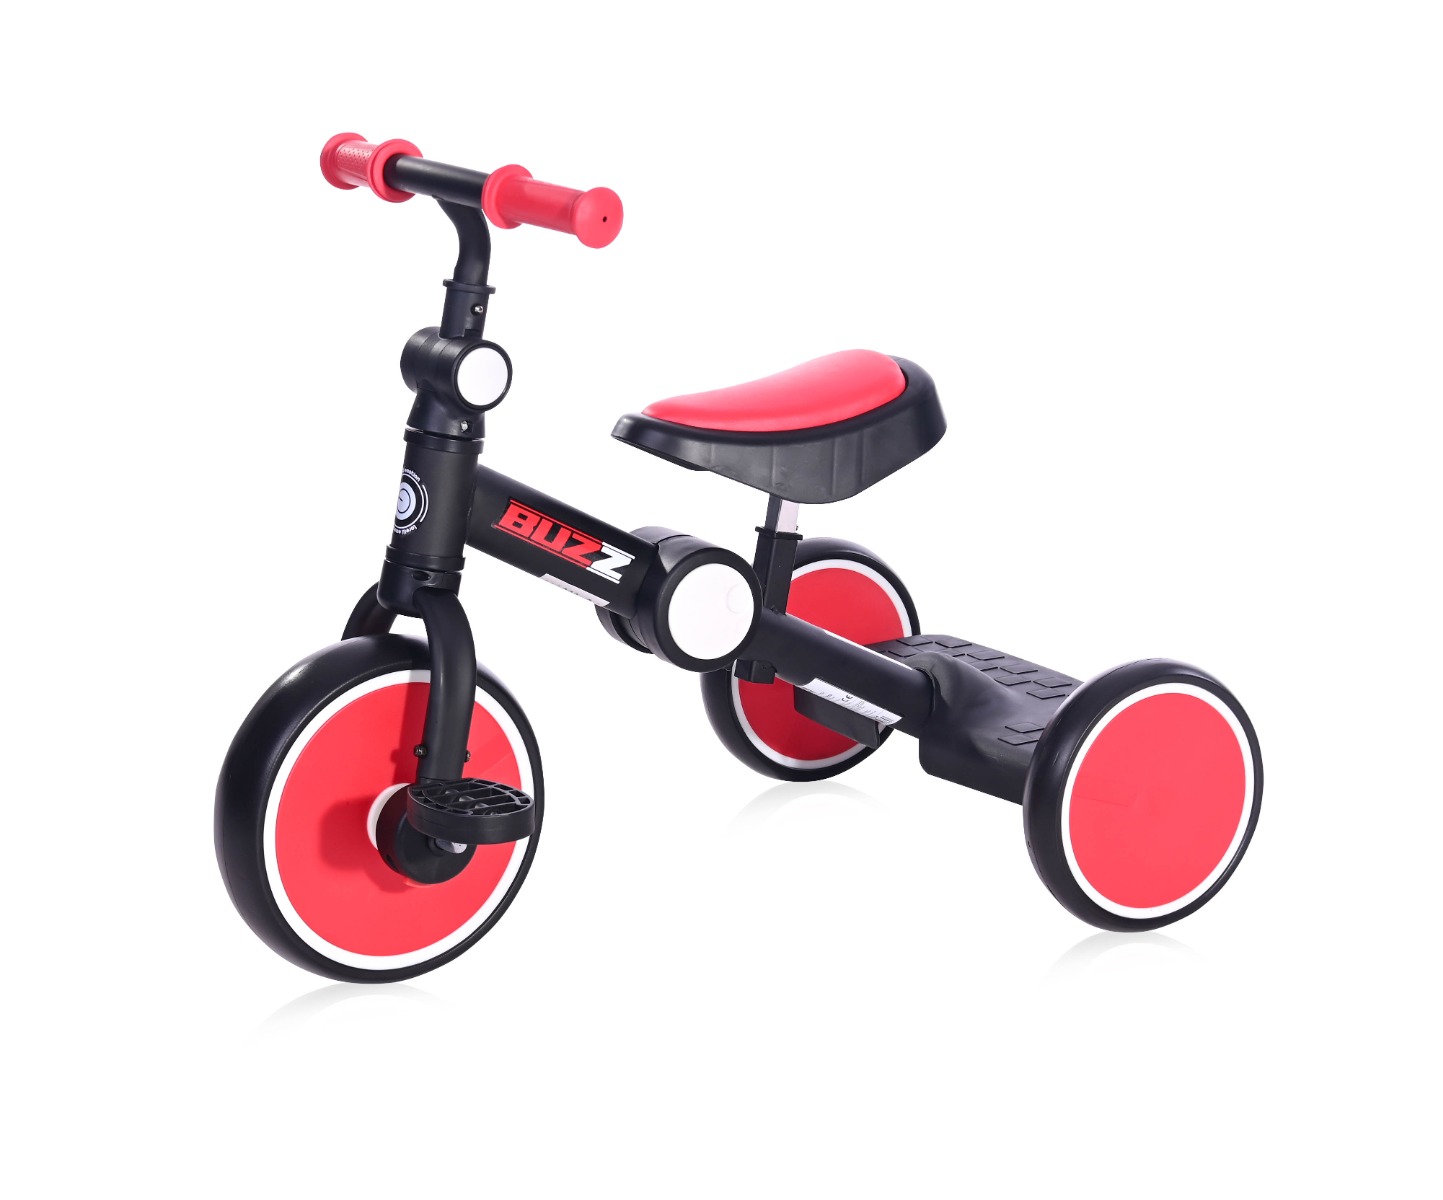 Tricicleta pentru copii, complet pliabila, Lorelli Buzz, Black Red La Plimbare 2023-09-25 3